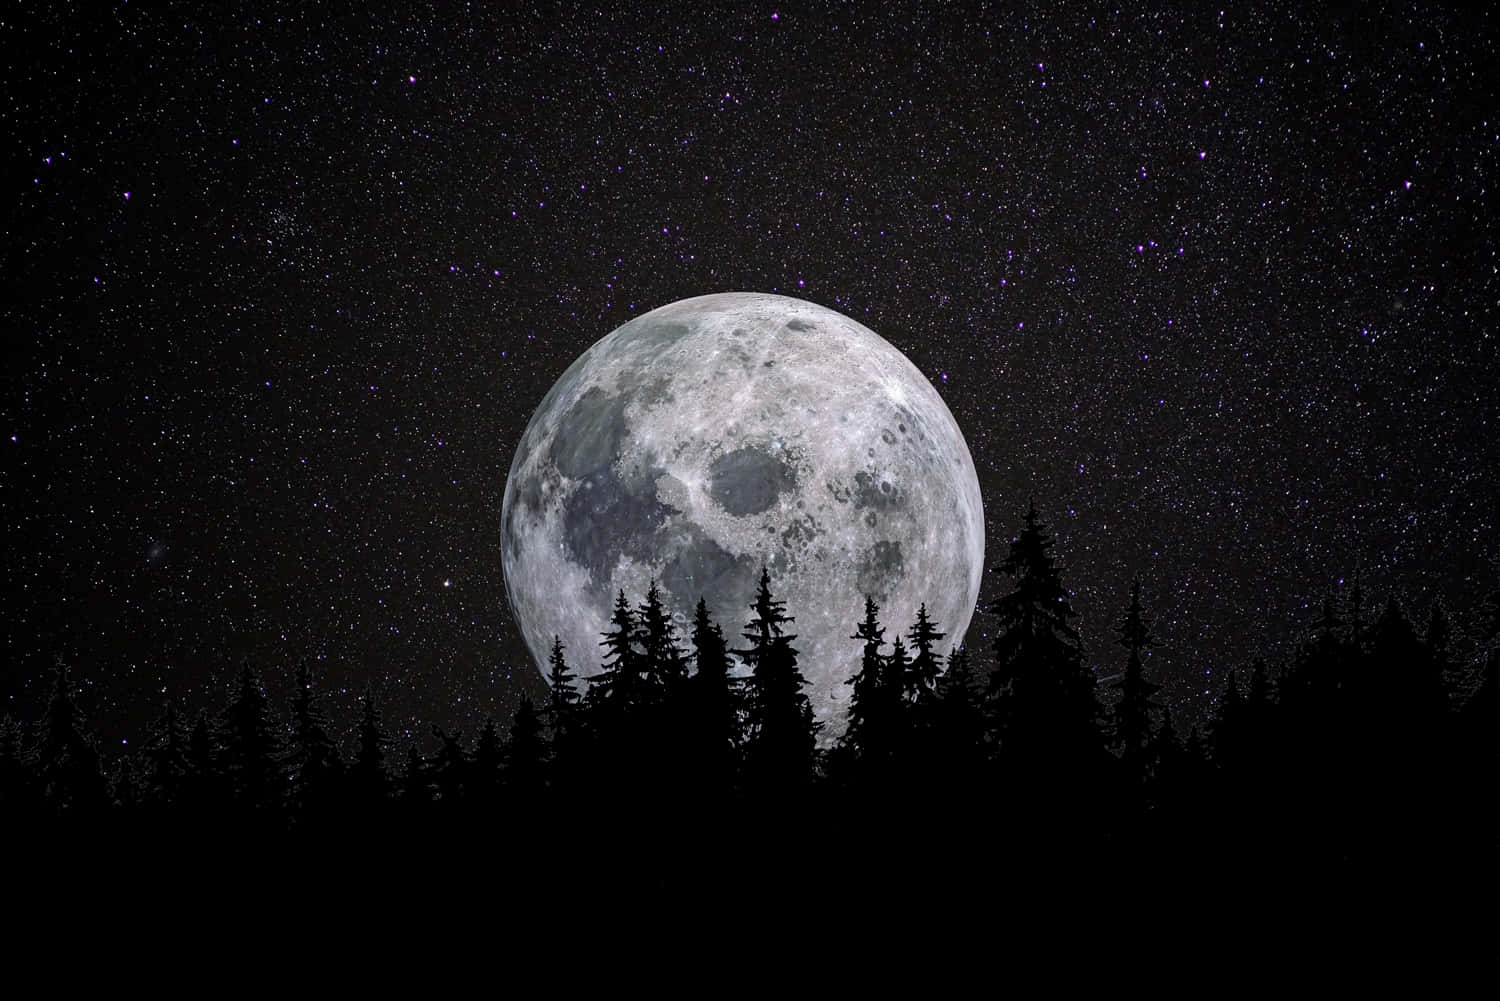 Imagendel Cielo Nocturno Con La Luna Frente A Un Bosque De Pinos.